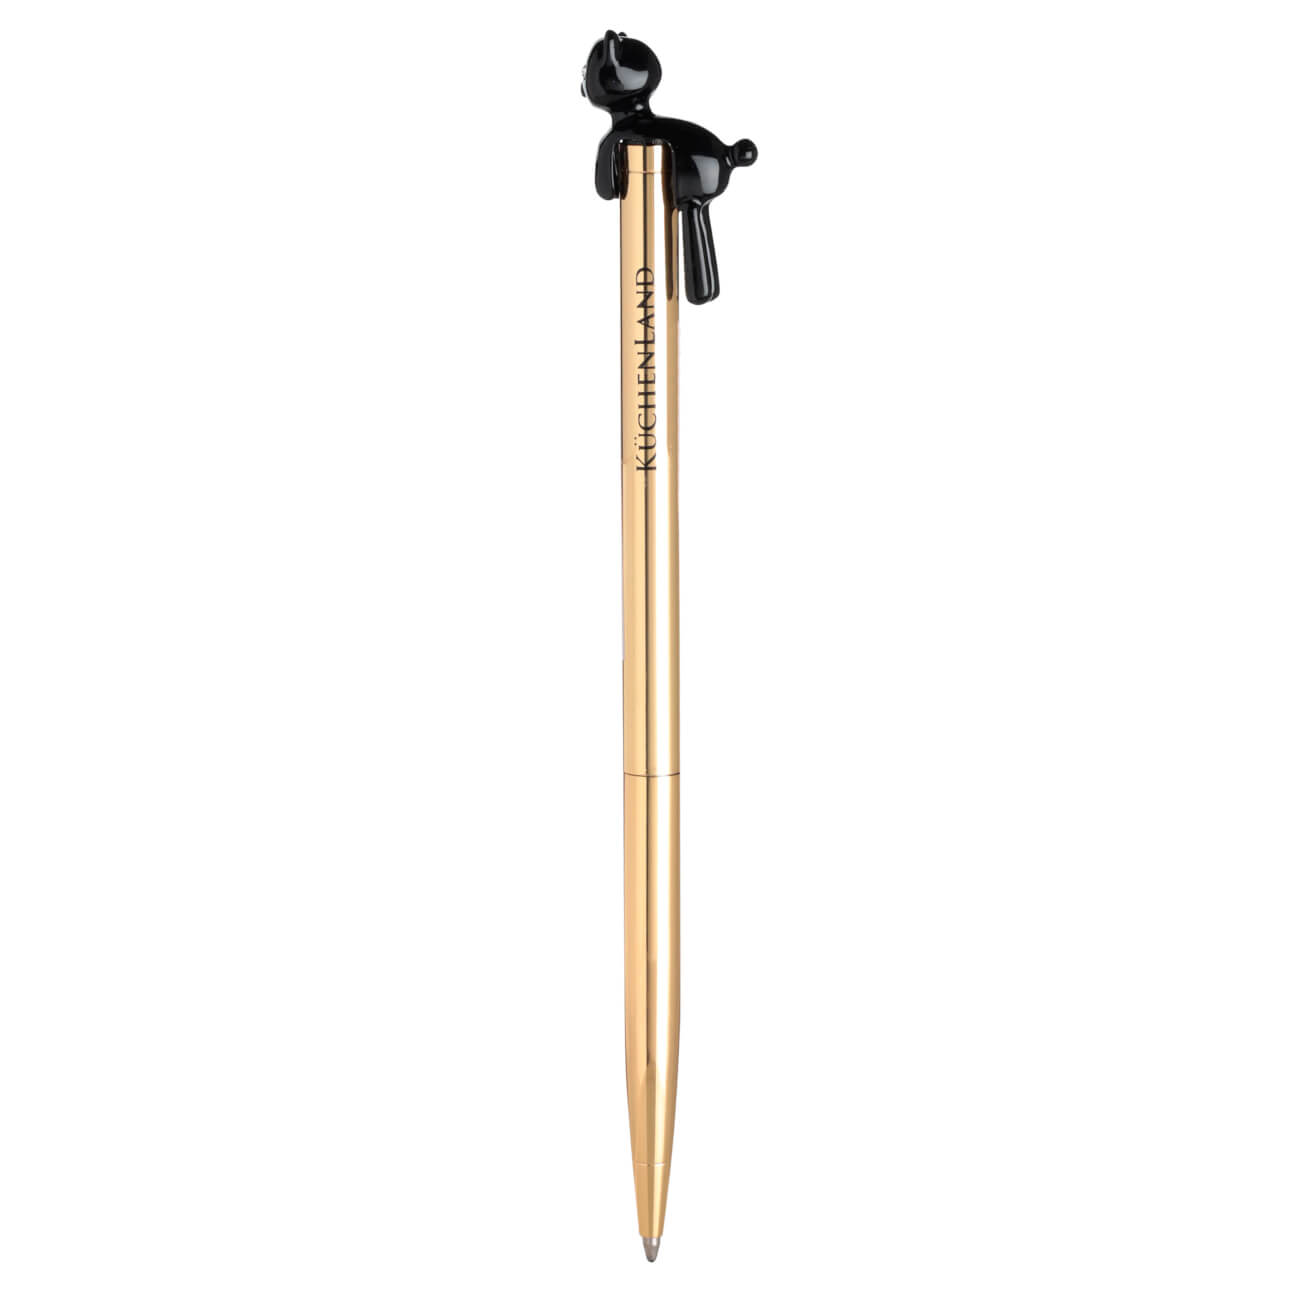 Ручка шариковая, 14 см, с фигуркой, металл, золотистая, Черный кот, Draw figure ручка шариковая 14 см с фигуркой металл черная символ мужчины draw figure